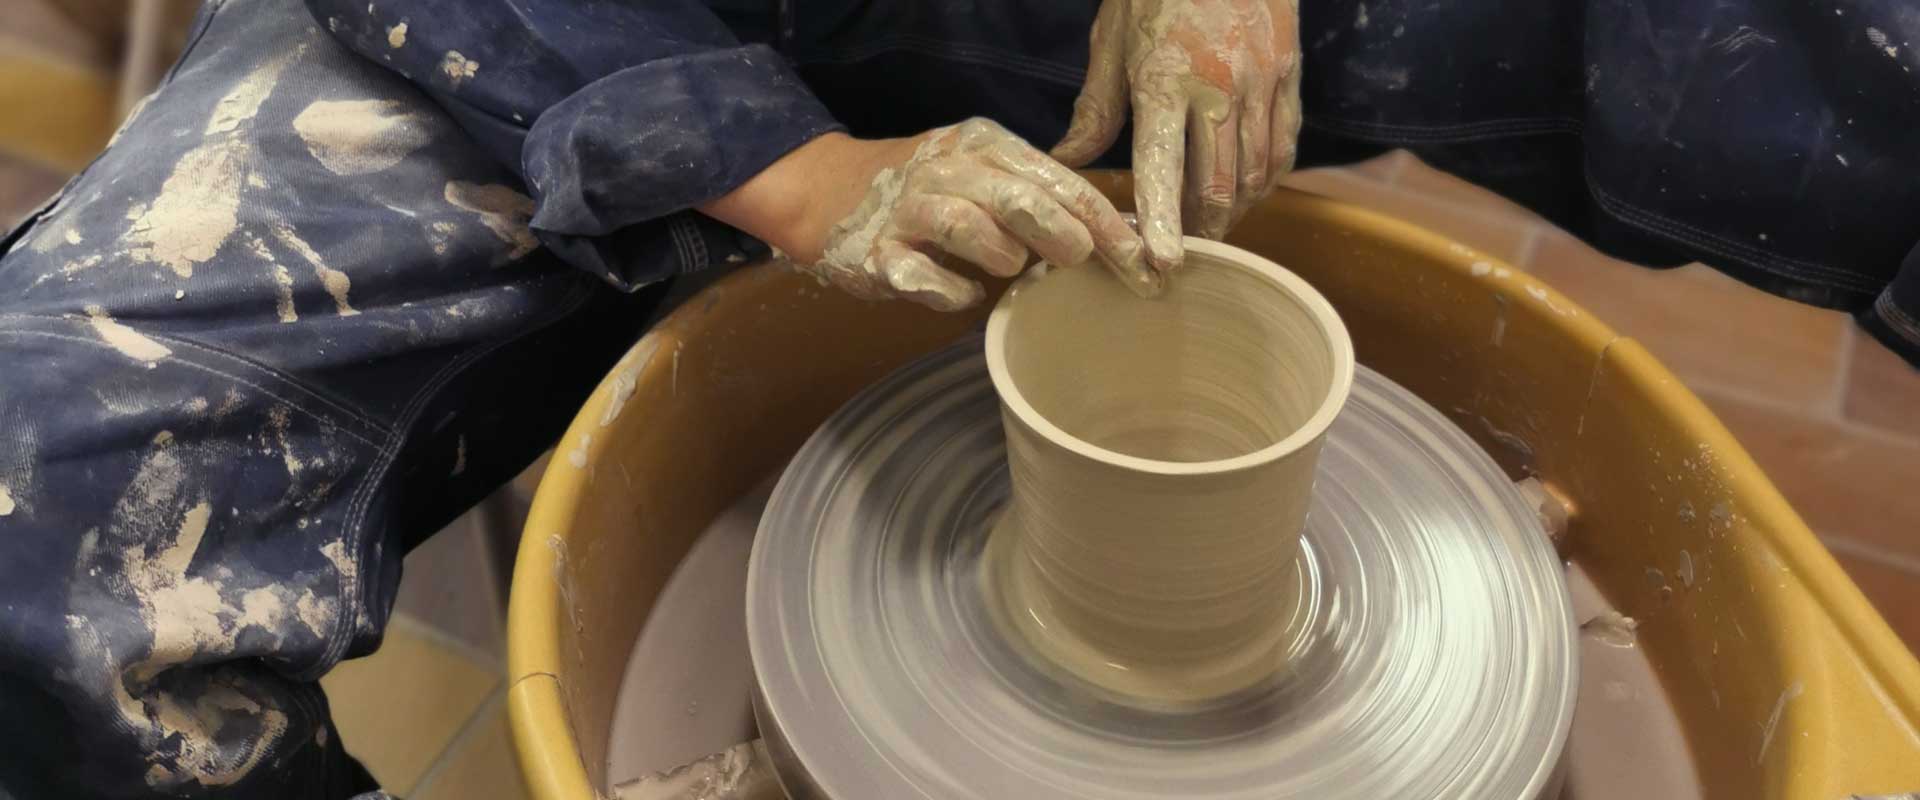 dreiing av keramikk